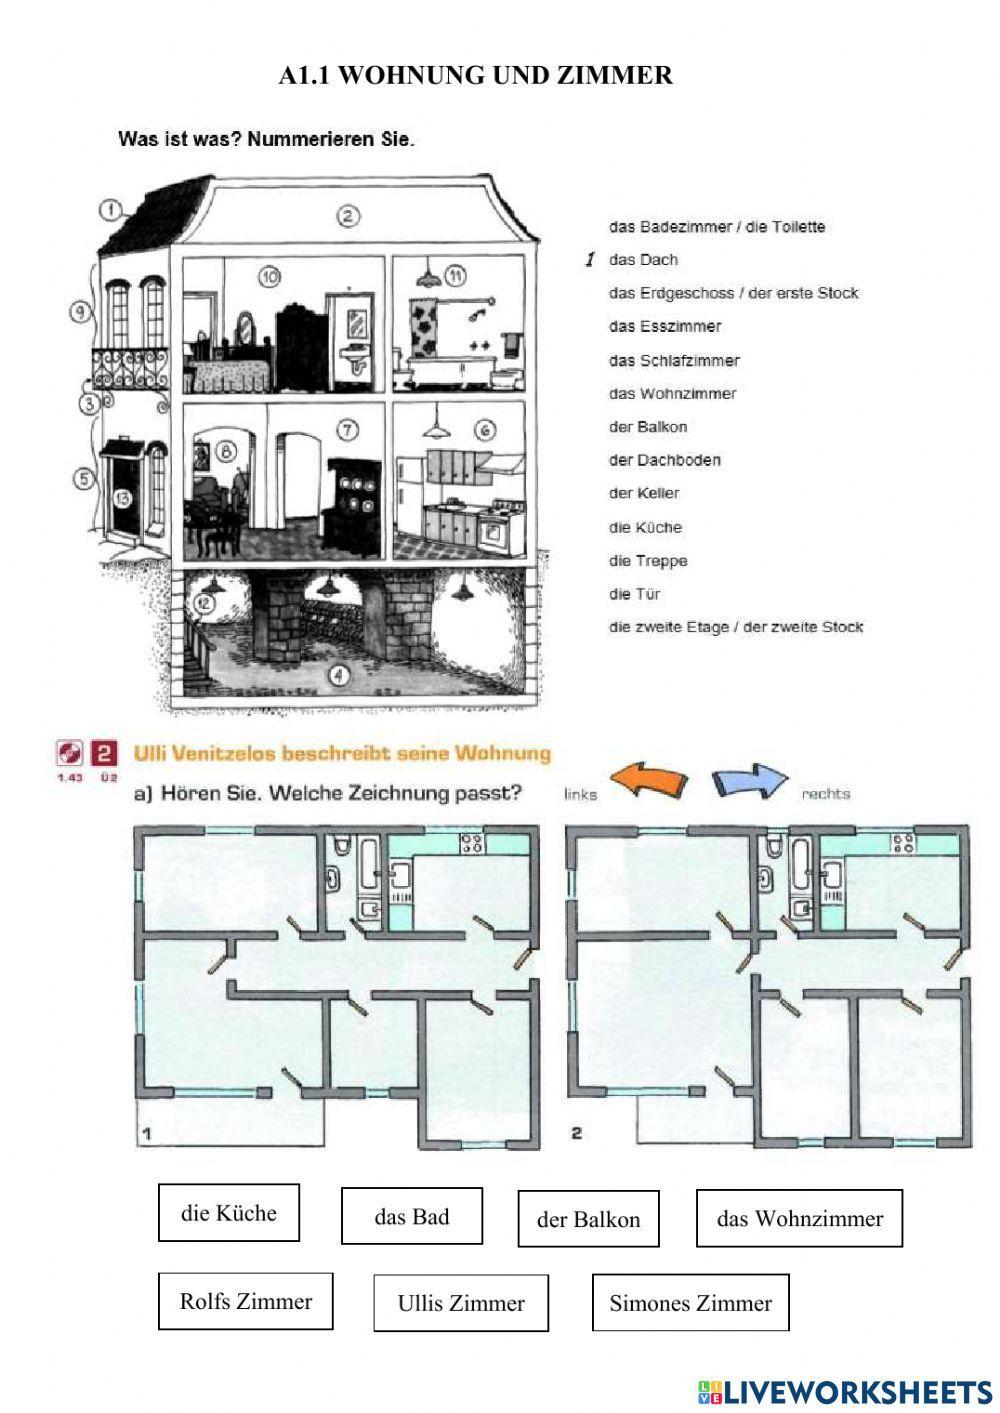 A1.1 Wohnung und Zimmer